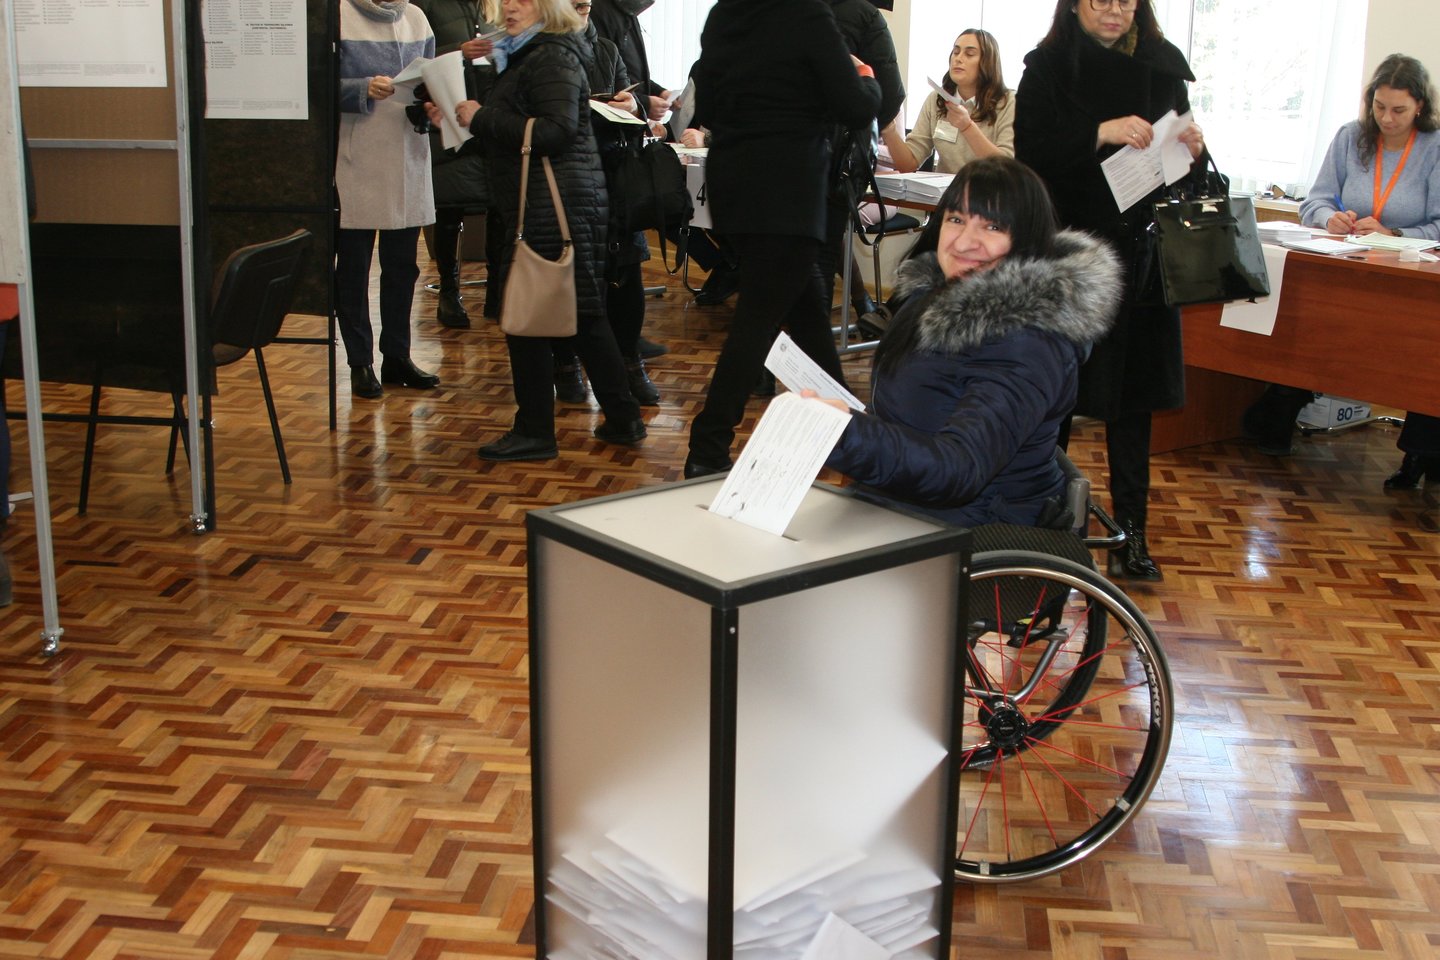 Pirmąją išankstinio balsavimo dieną iki pietų savo valią pareiškė beveik 400 marijampoliečių.<br>L.Juodzevičienės nuotr.